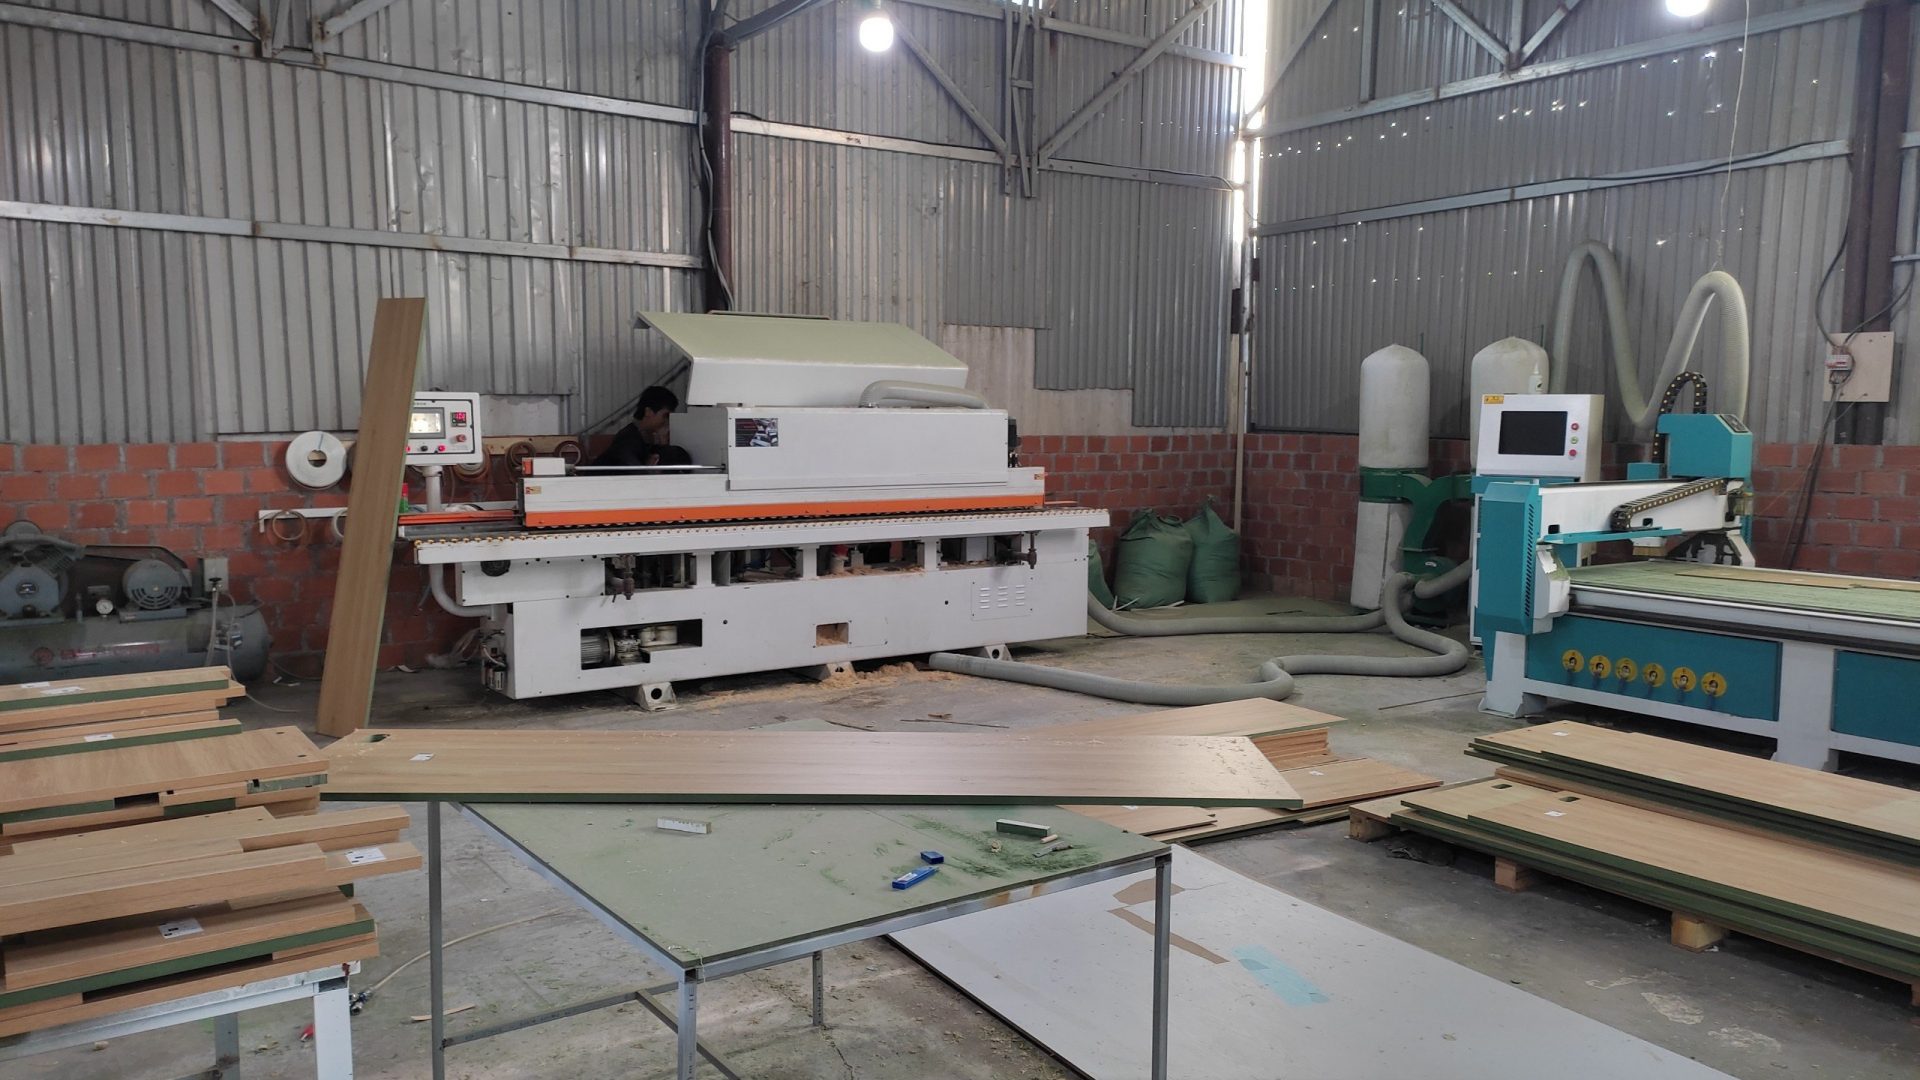 Xưởng sản xuất nội thất của Nhất Tín với nhiều máy móc hiện đại